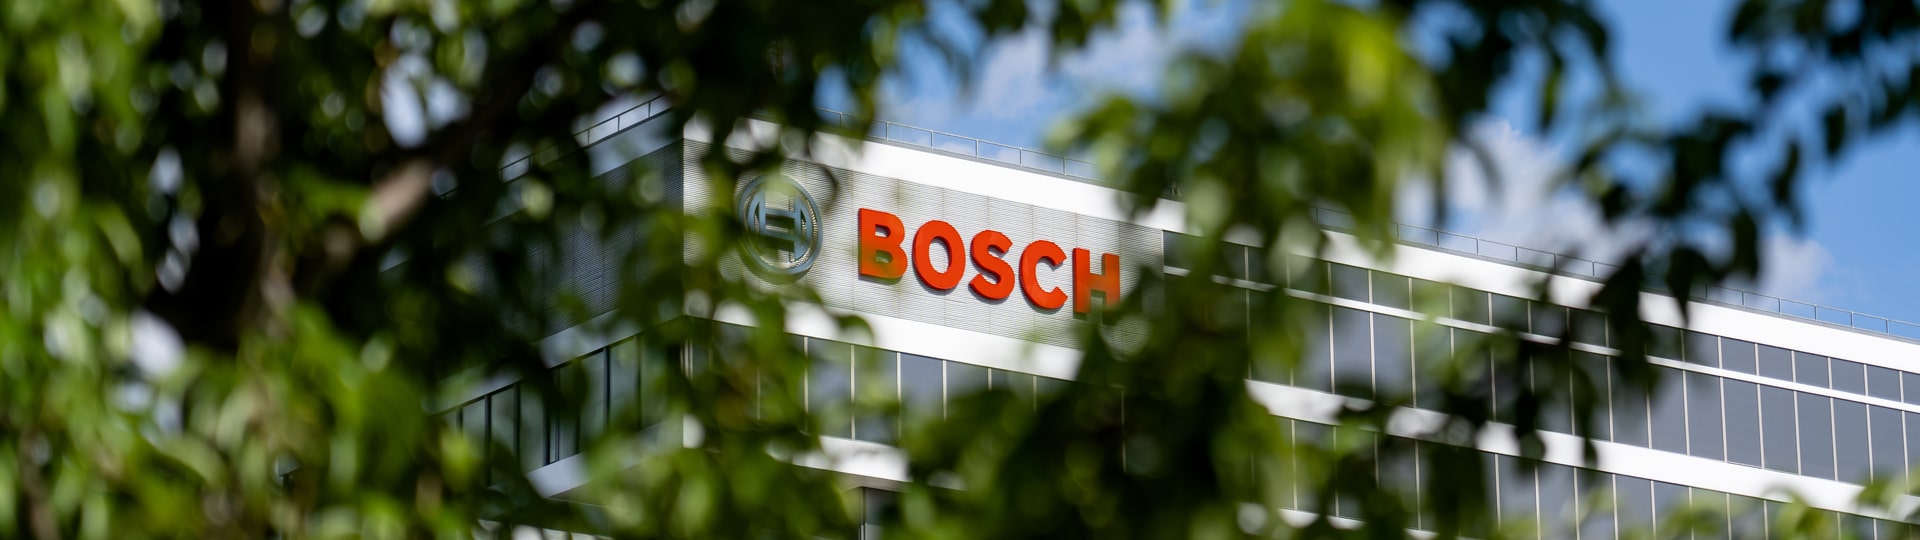 Bosch investuje 3 miliardy eur do výroby čipů